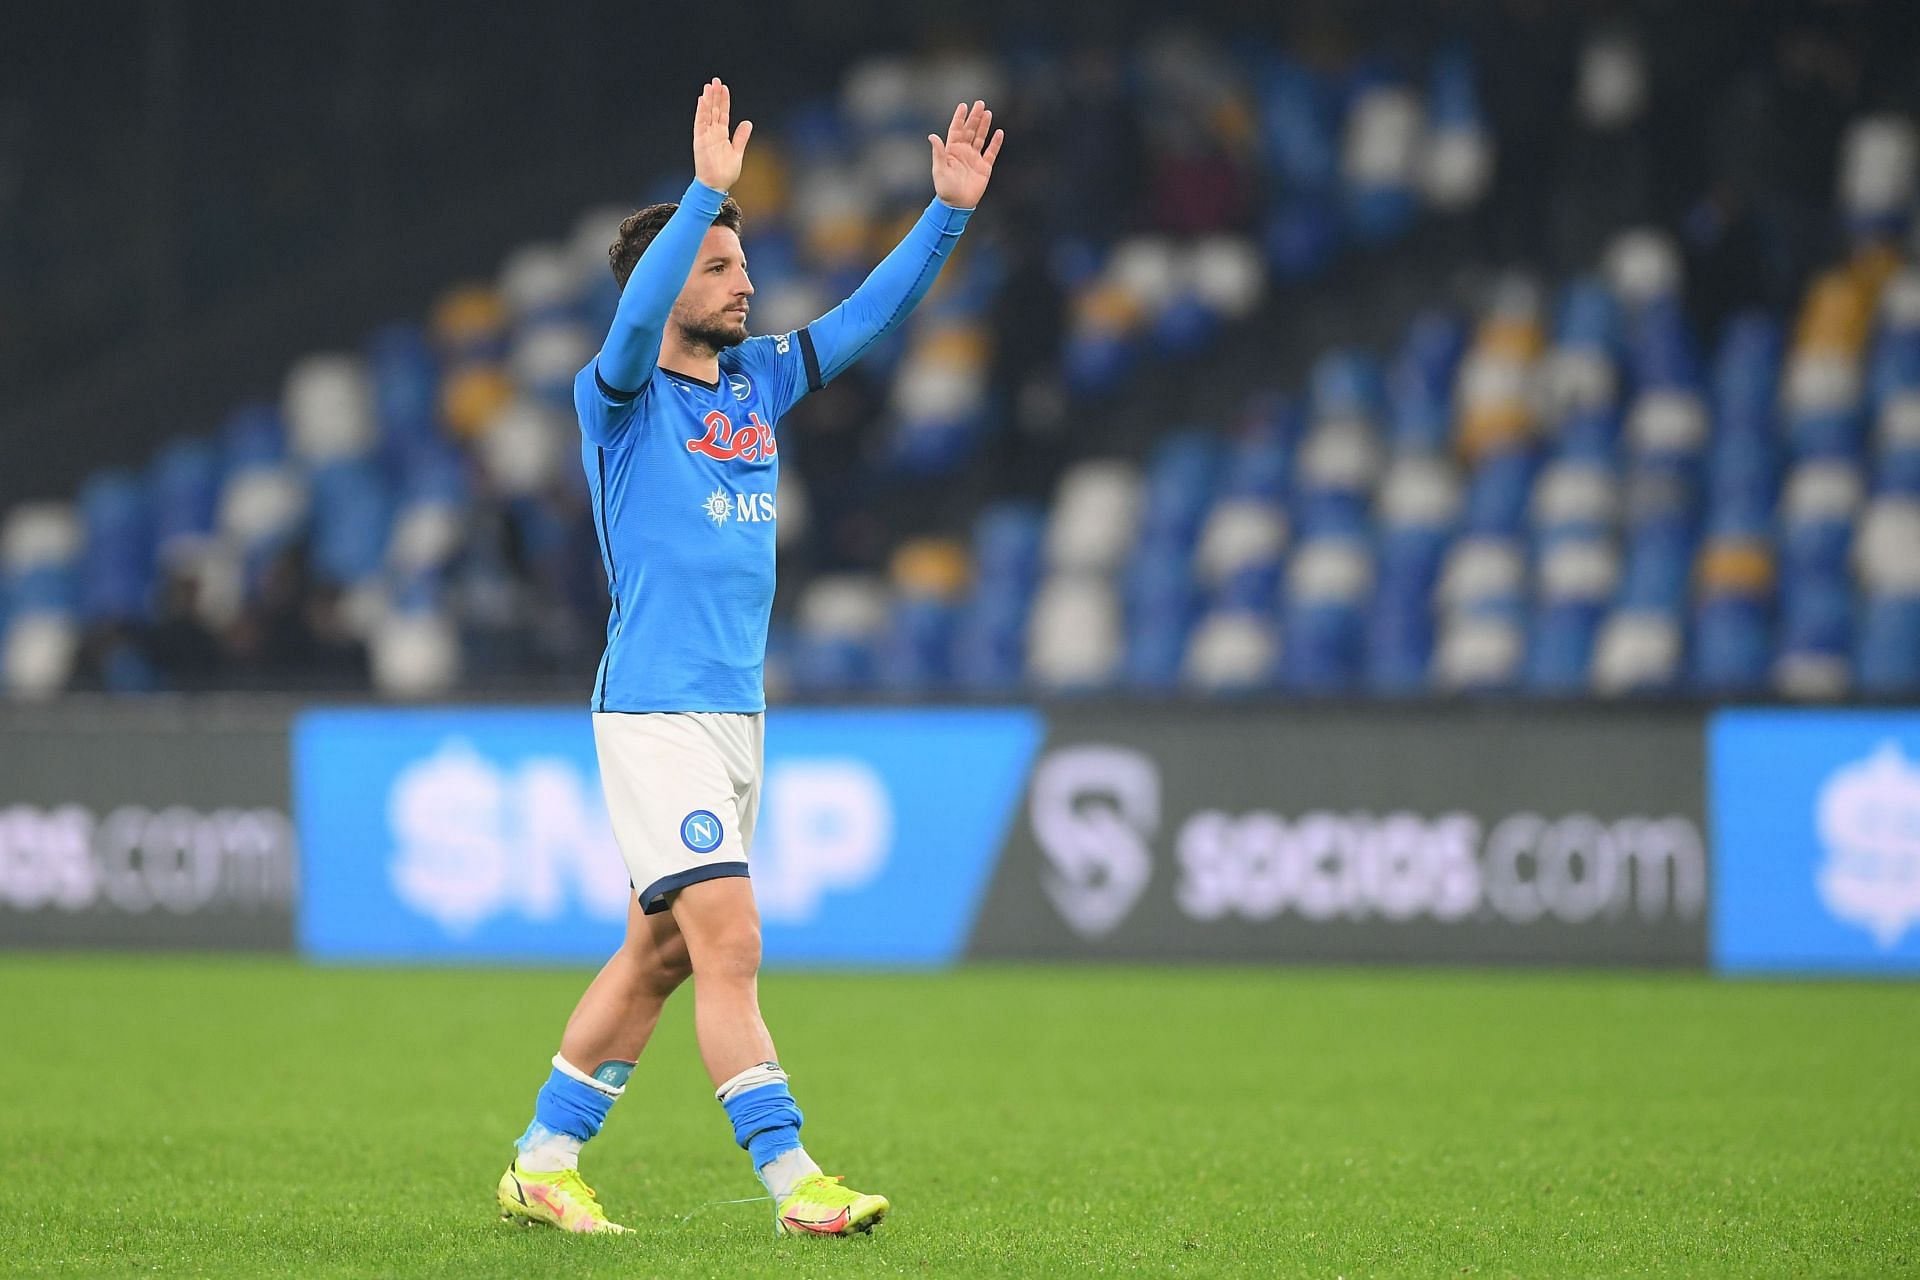 Napoli take on Sampdoria this weekend